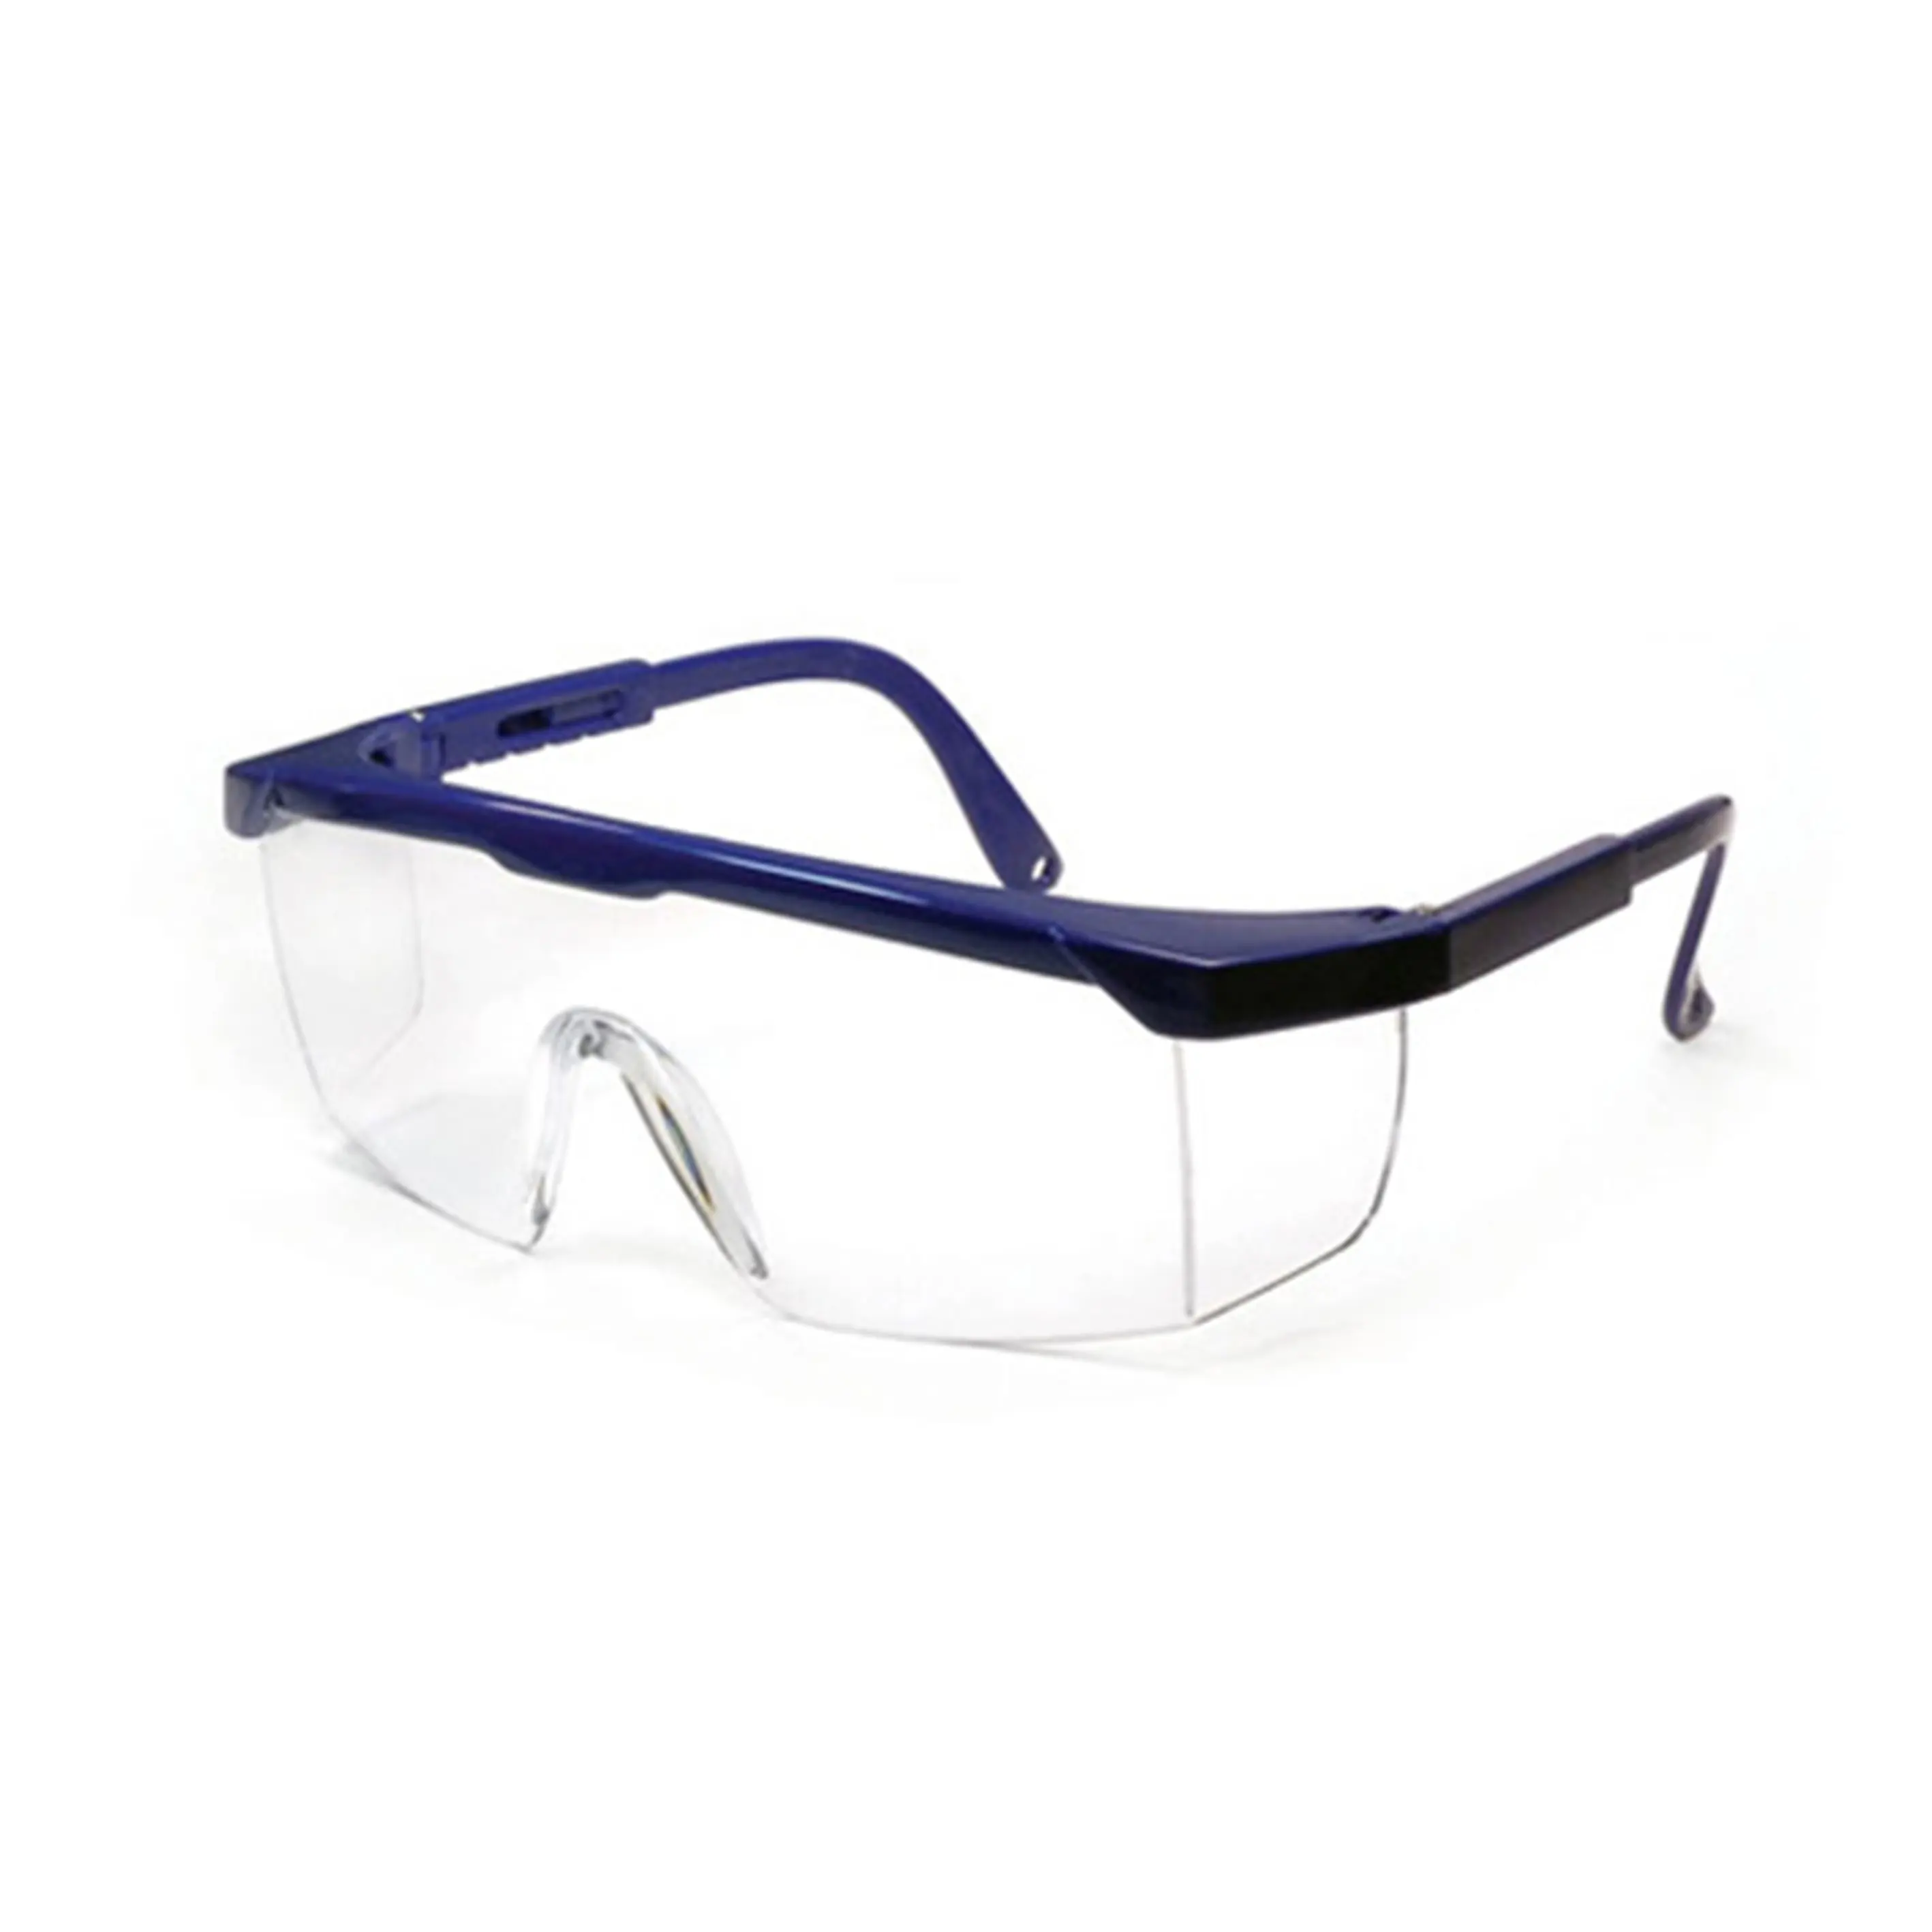 SG1001 kacamata pengaman, Kacamata kerja Anti benturan, kacamata pelindung sisi, kacamata las keselamatan CE